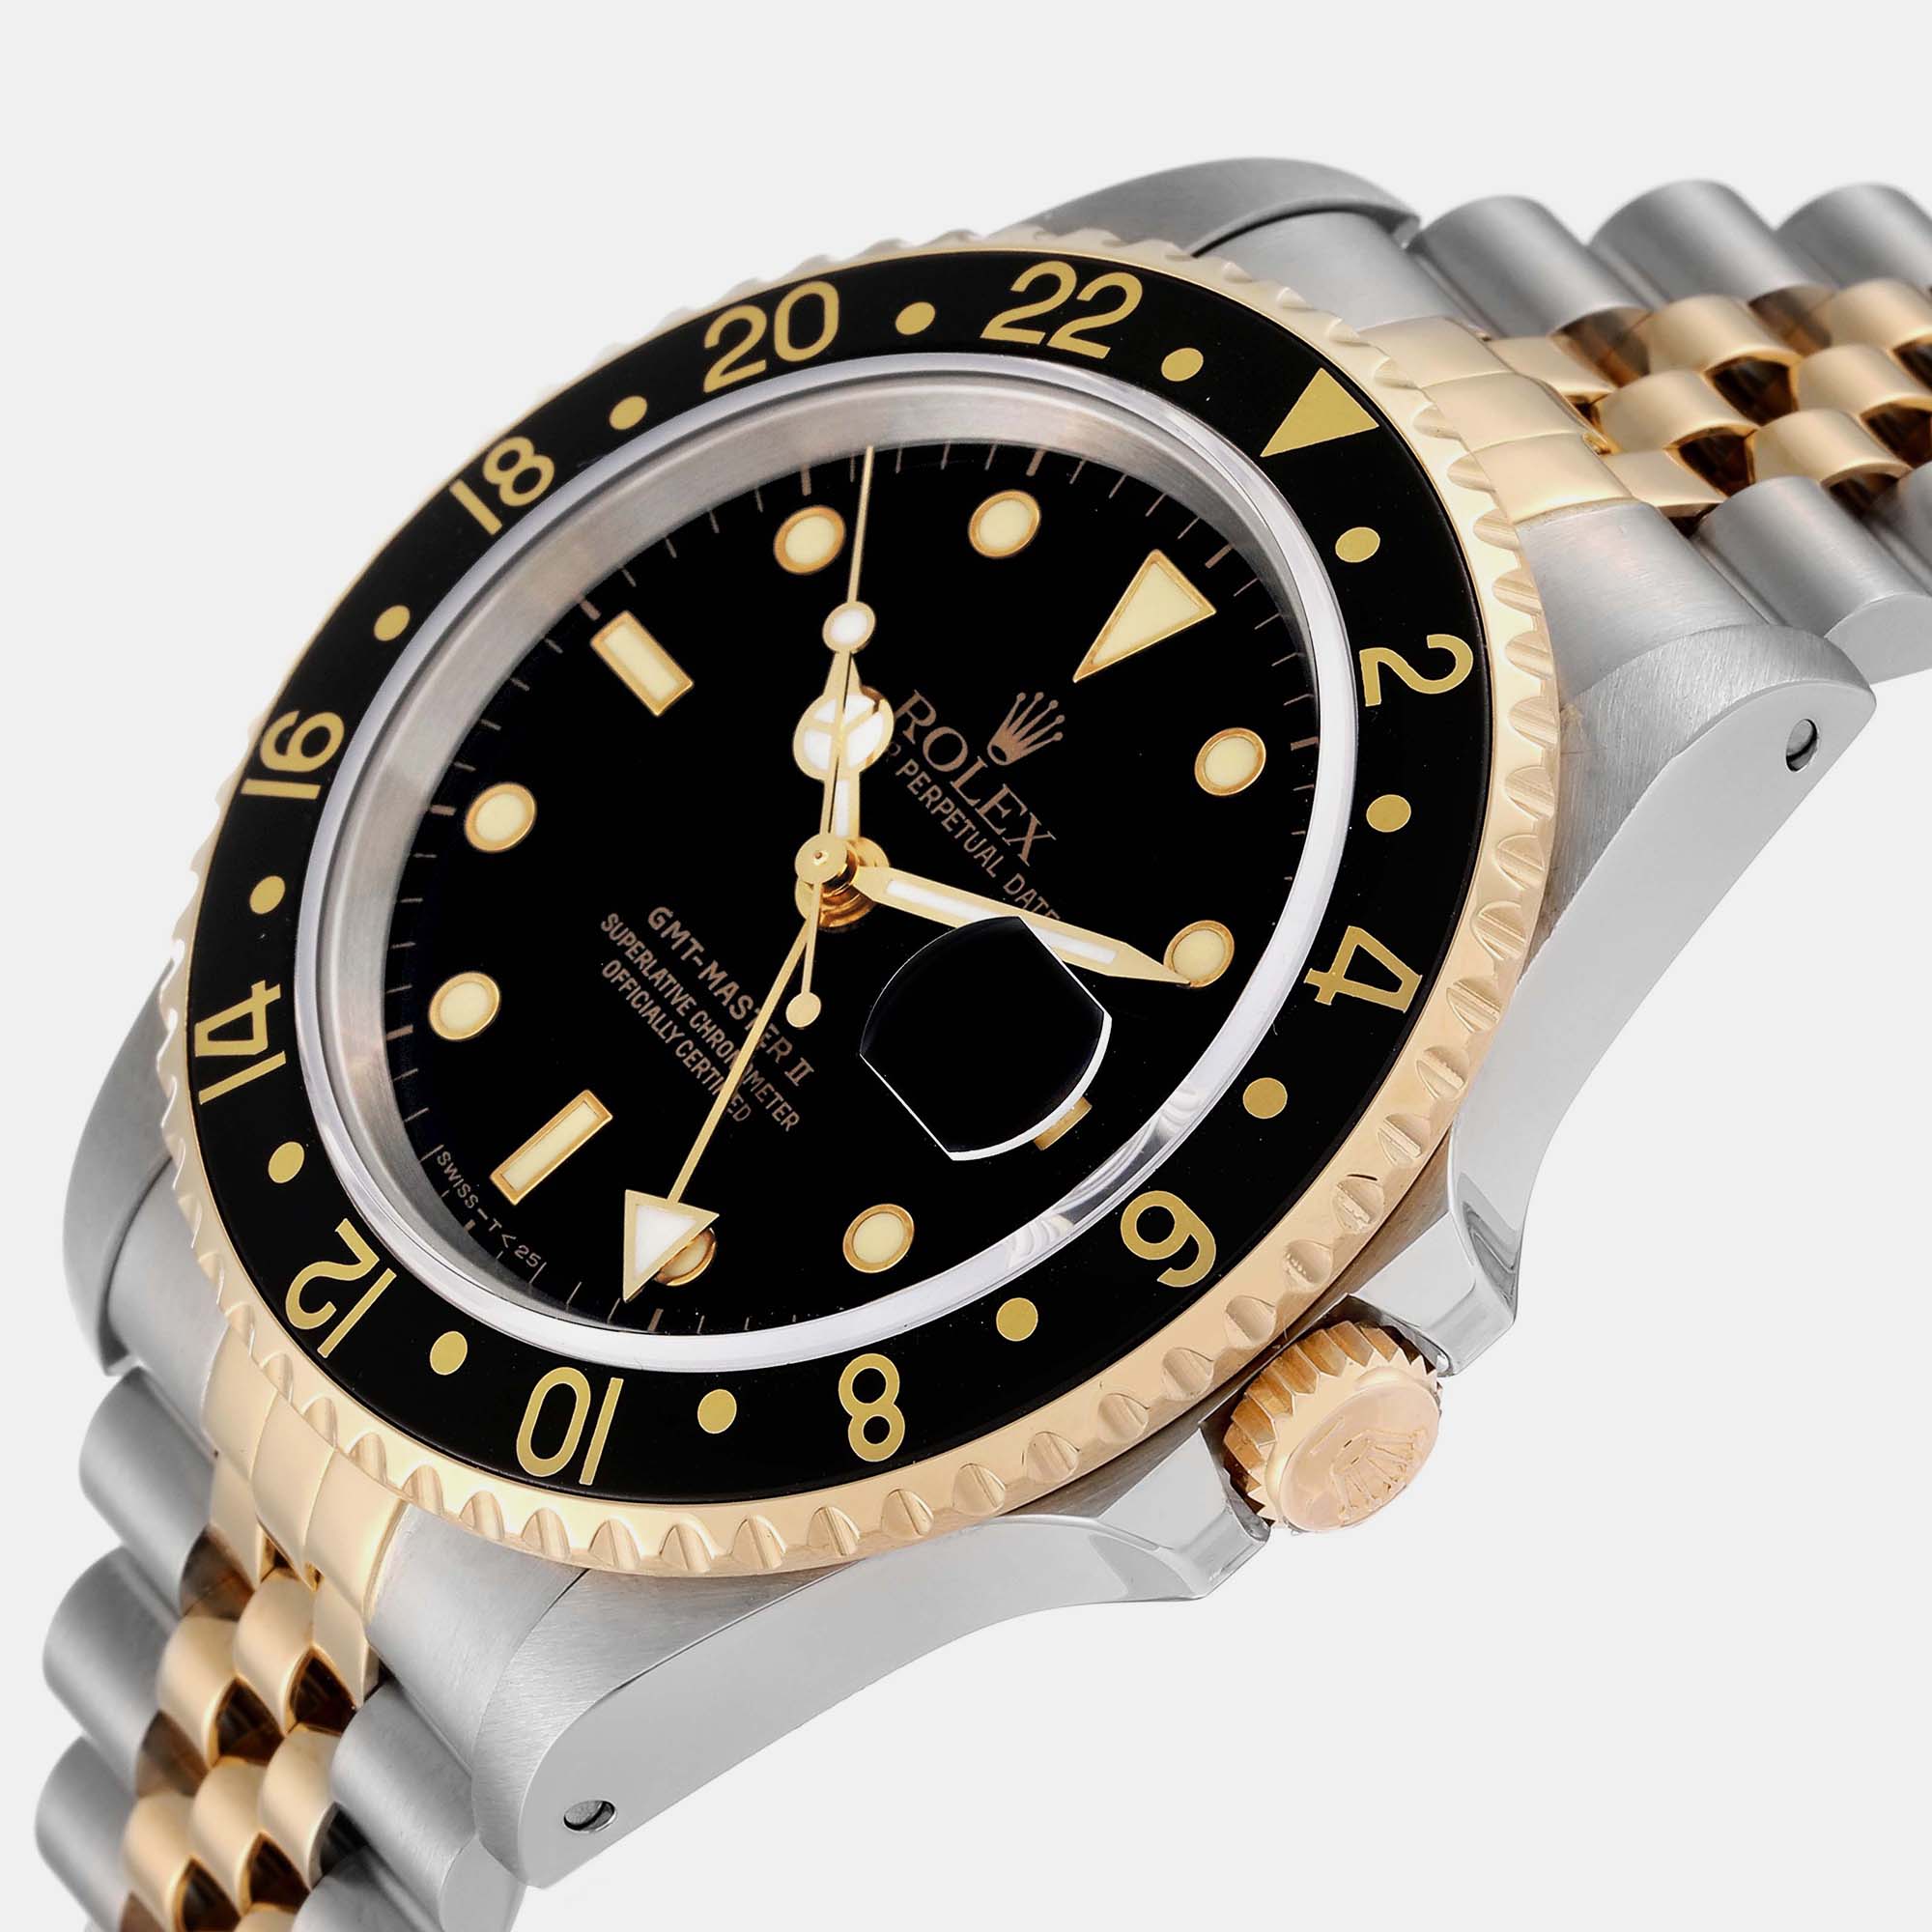 

Rolex GMT Master II Yellow Gold Steel Jubilee Bracelet Men's Watch 16713 40 mm, Black